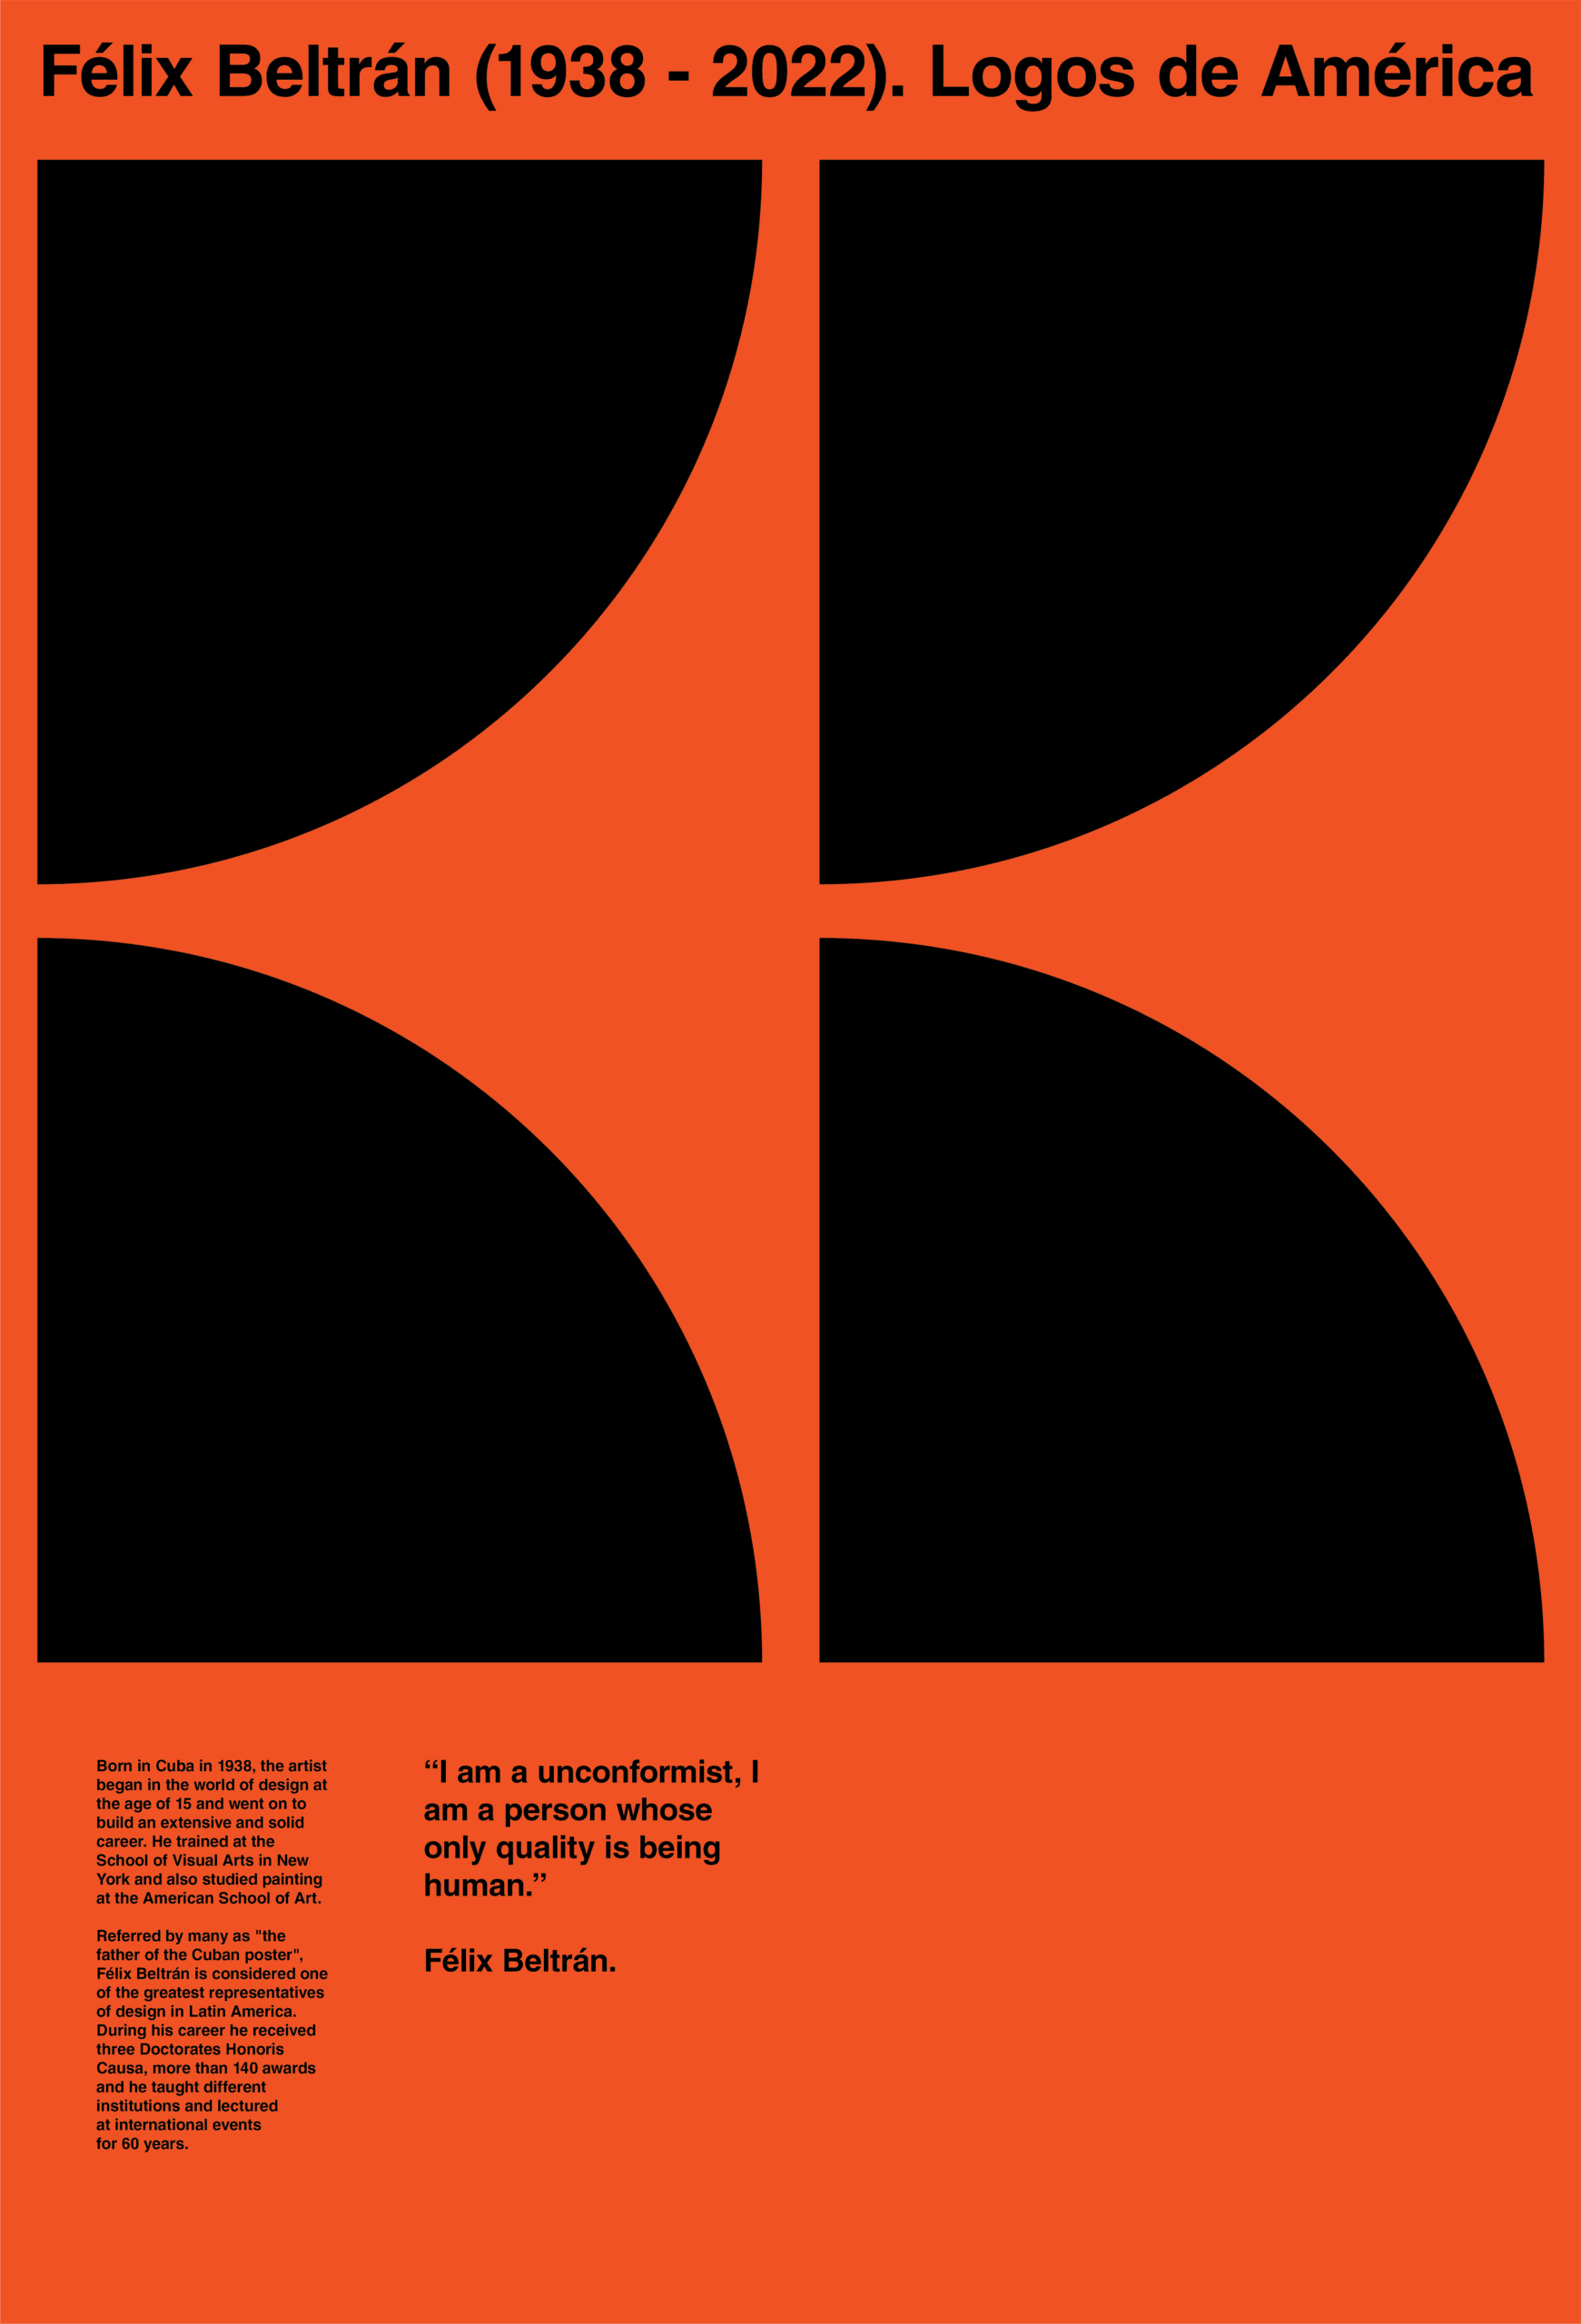 Logos de América Poster - Félix Beltrán - Bureau 105